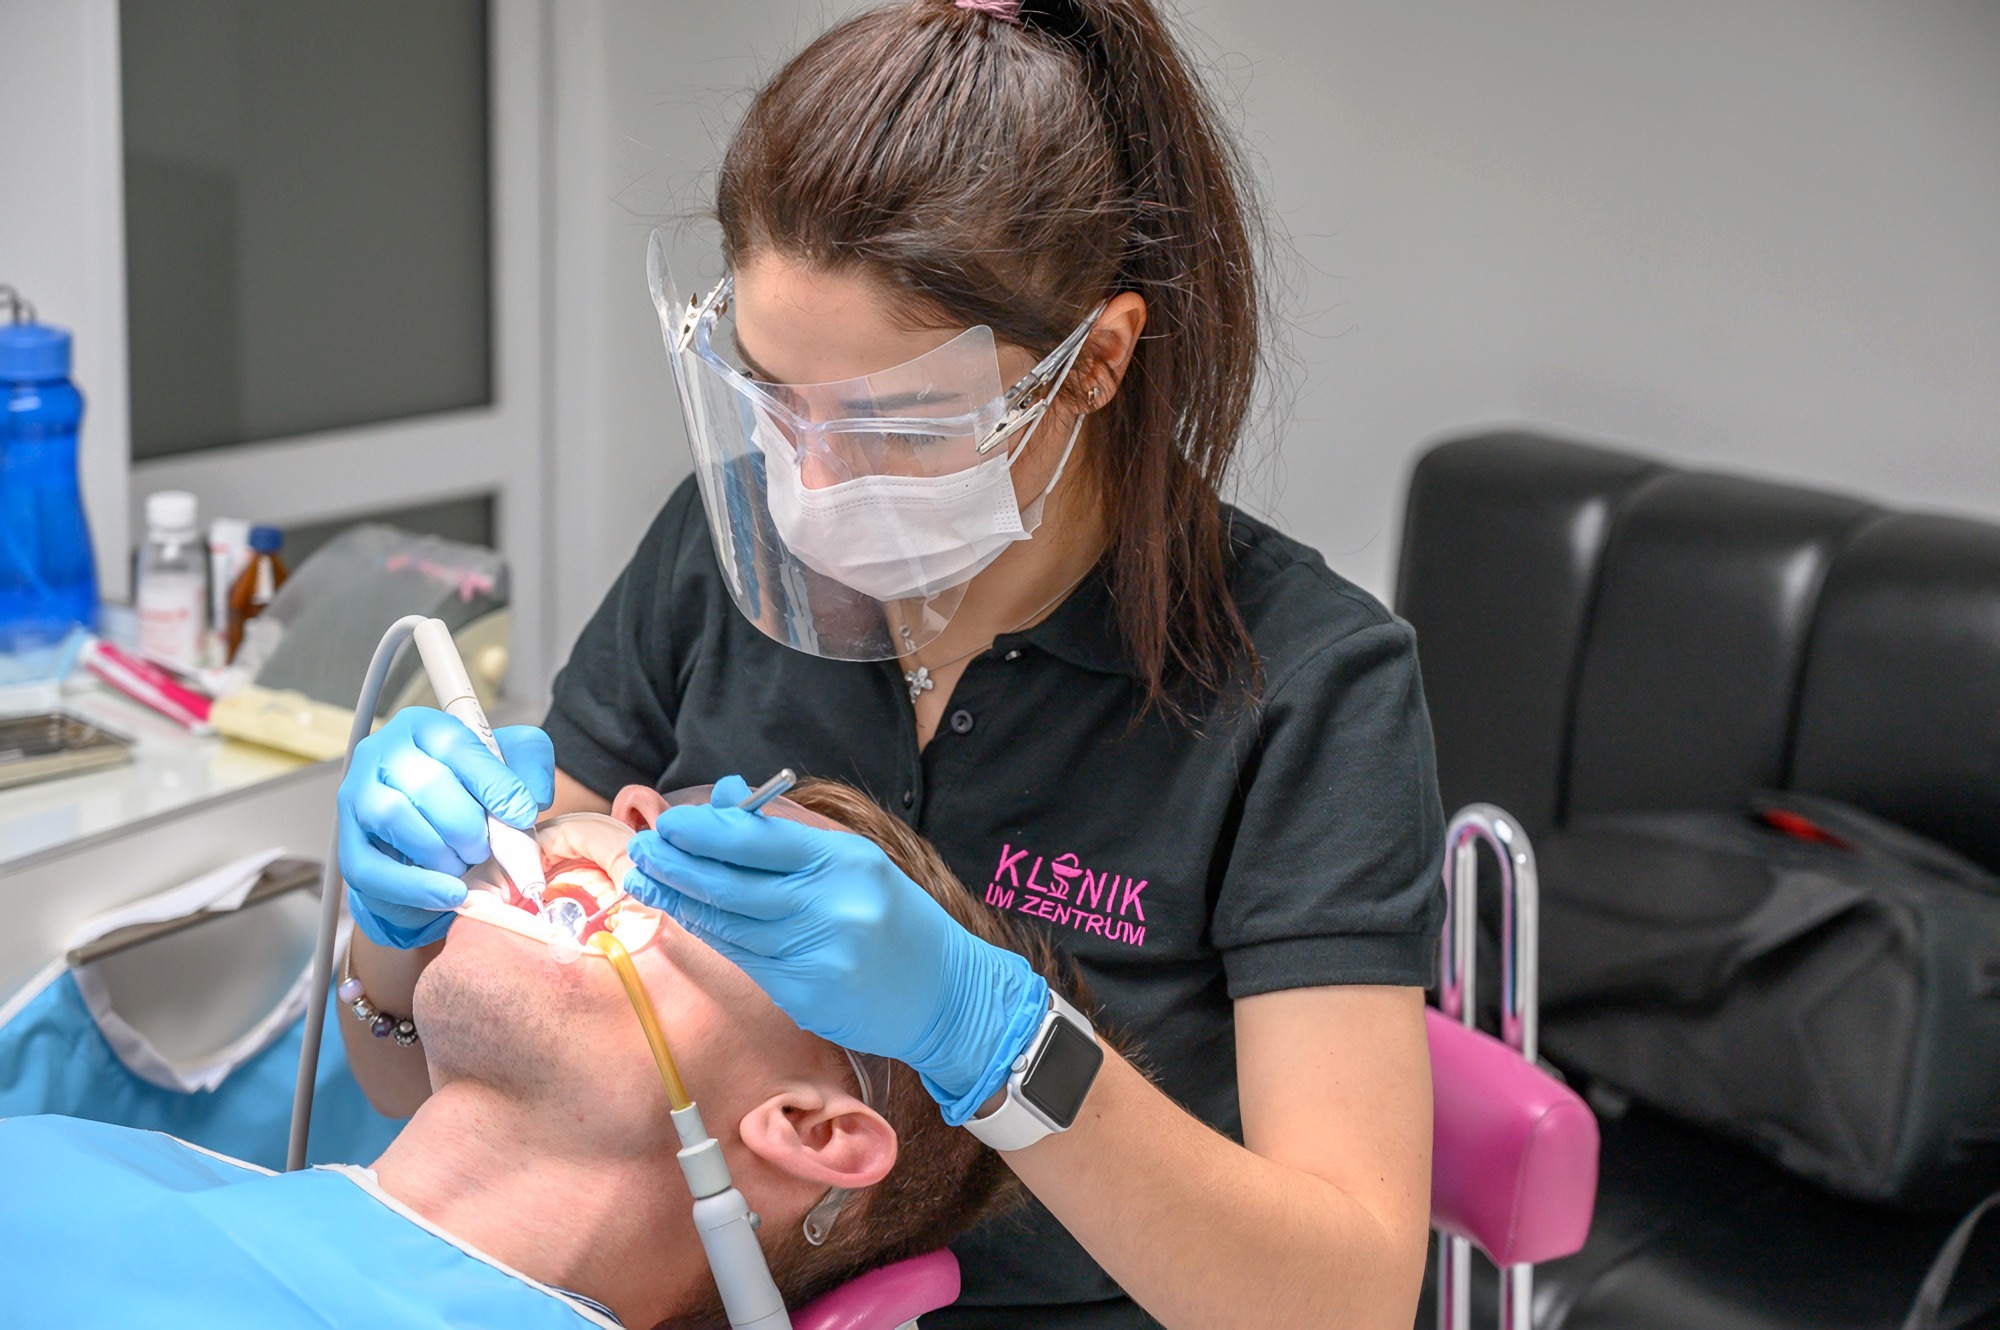 Higieniczne czyszczenie zębów w Klinik im Zentrum Dental Clinic w Odessie Ukraina